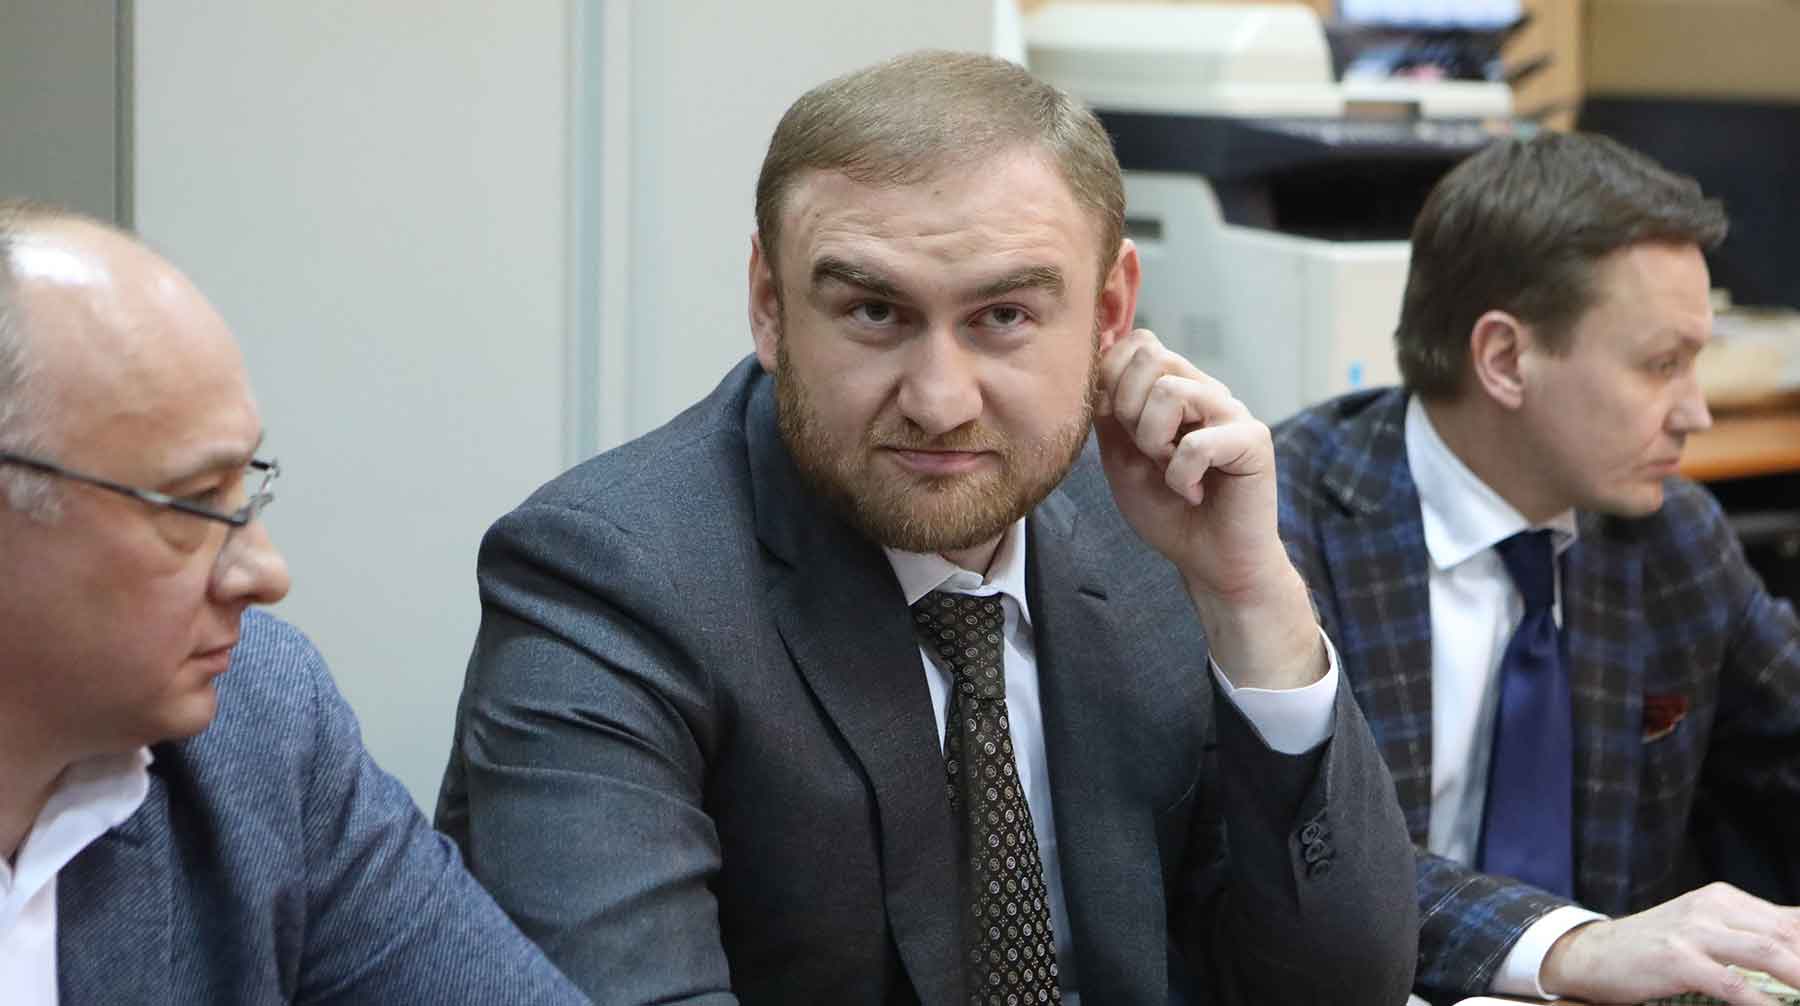 Арестованный сенатор от Карачаево-Черкесии обвиняется в участии в преступном сообществе и организации убийства Фото: © Агентство Москва